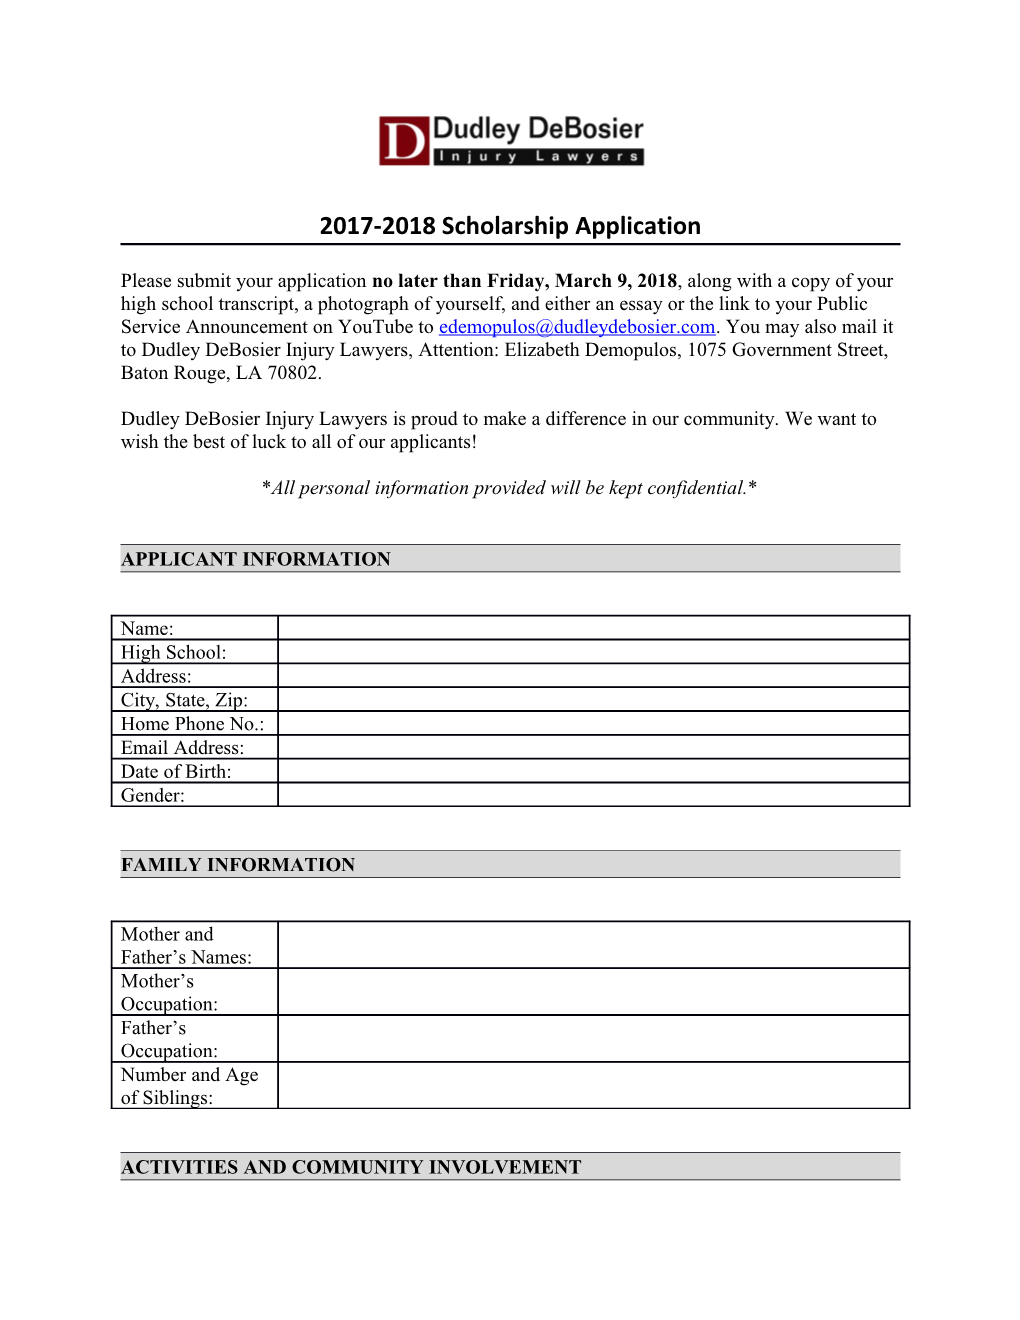 Dudley Debosier Scholarship Application